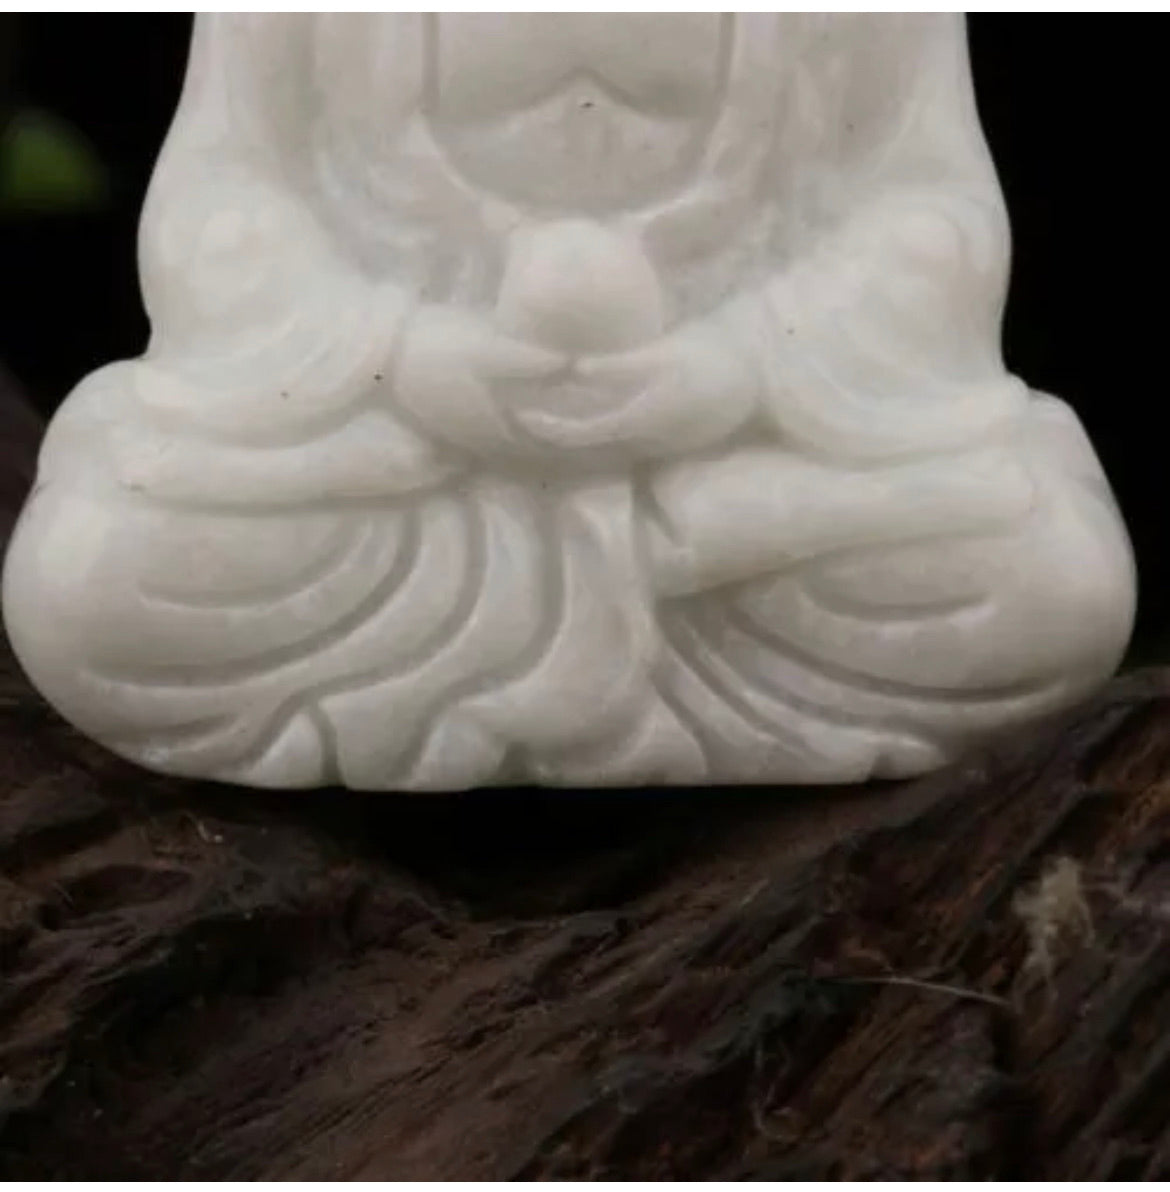 Natural White Jade Buddha figurine